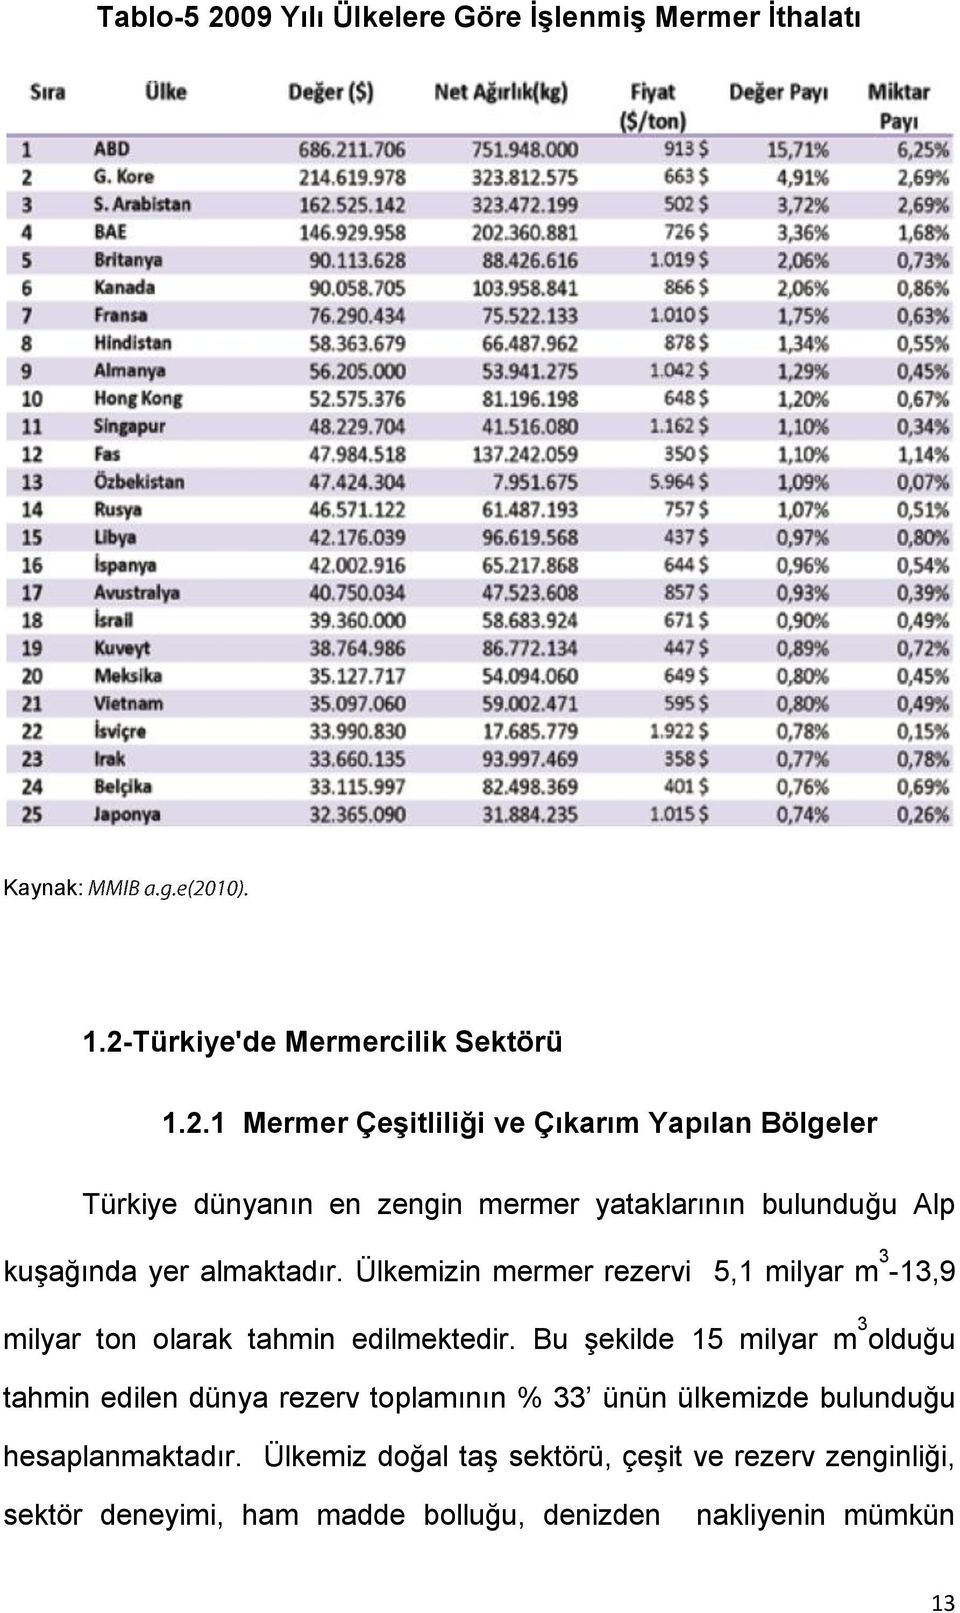 Türkiye'de Mermercilik Sektörü 1.2.